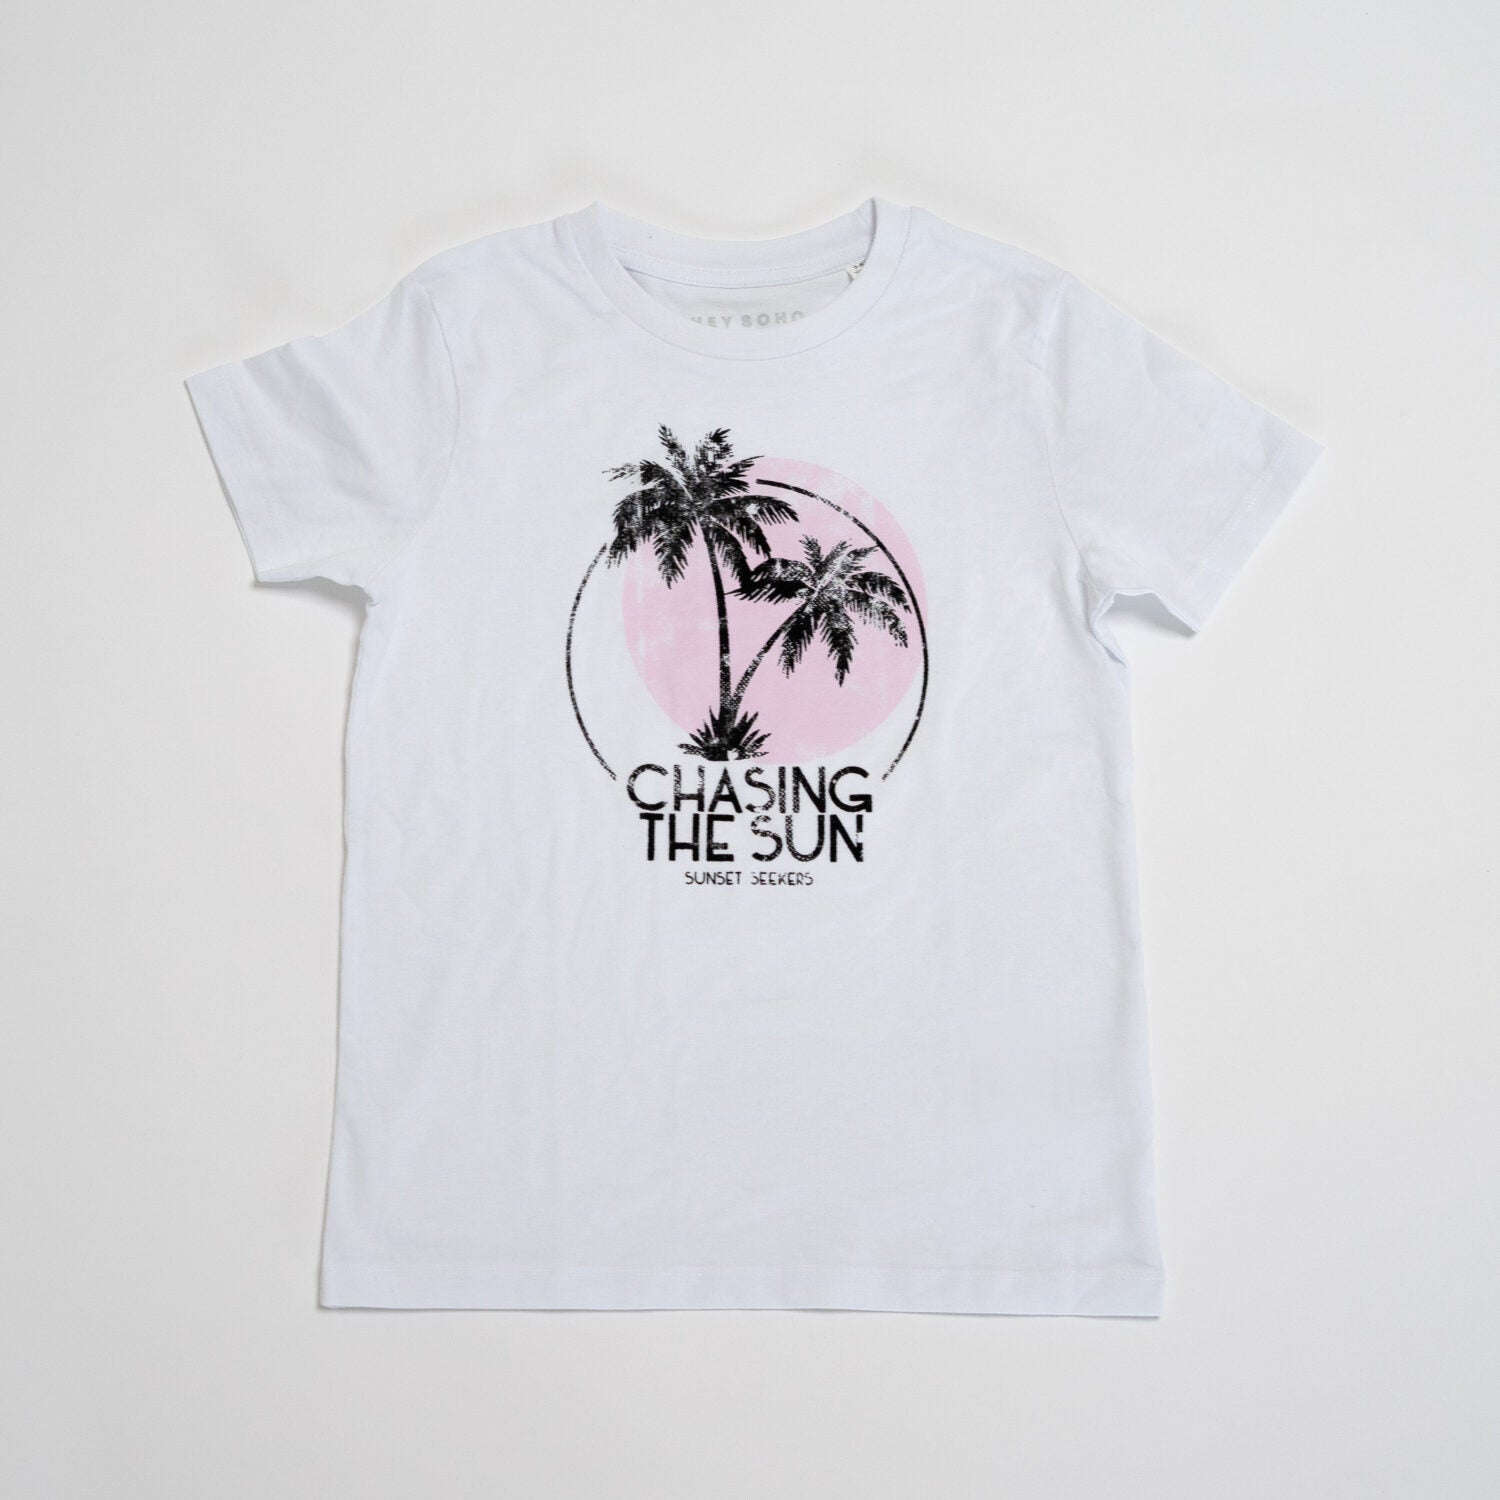 hey soho Kids T-Shirt "Chasing the sun"